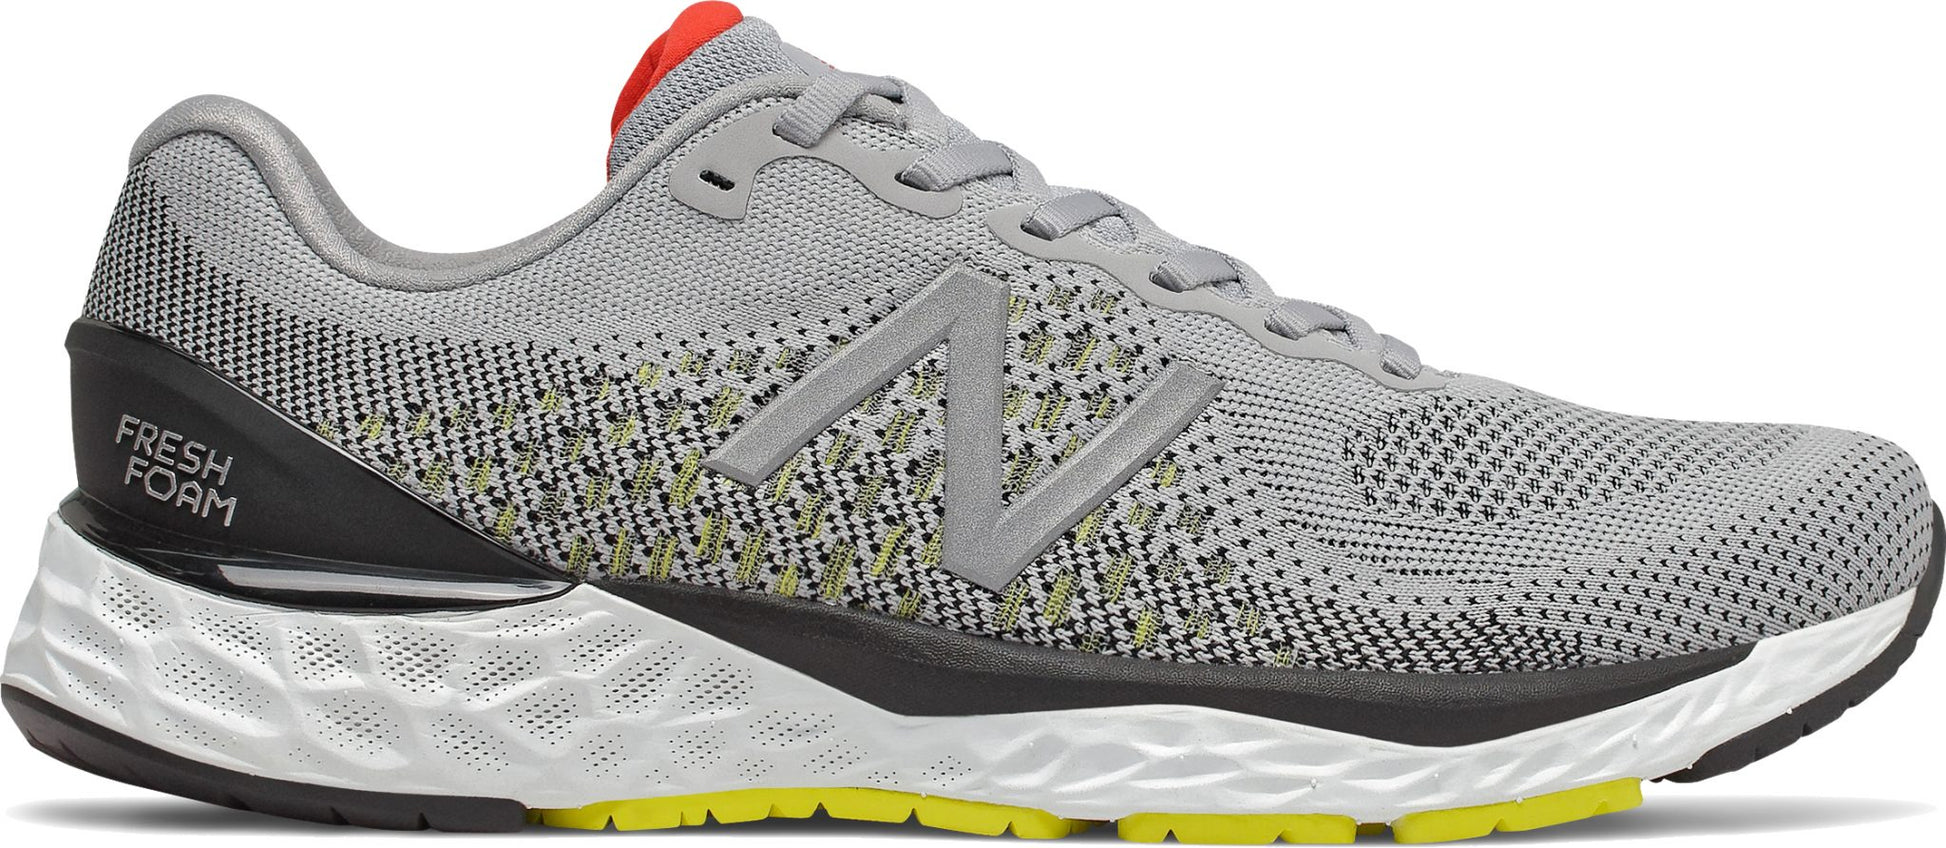 New Balance Men's M880G10 Silver Running Shoe - Grady’s Feet Essentials - New Balance